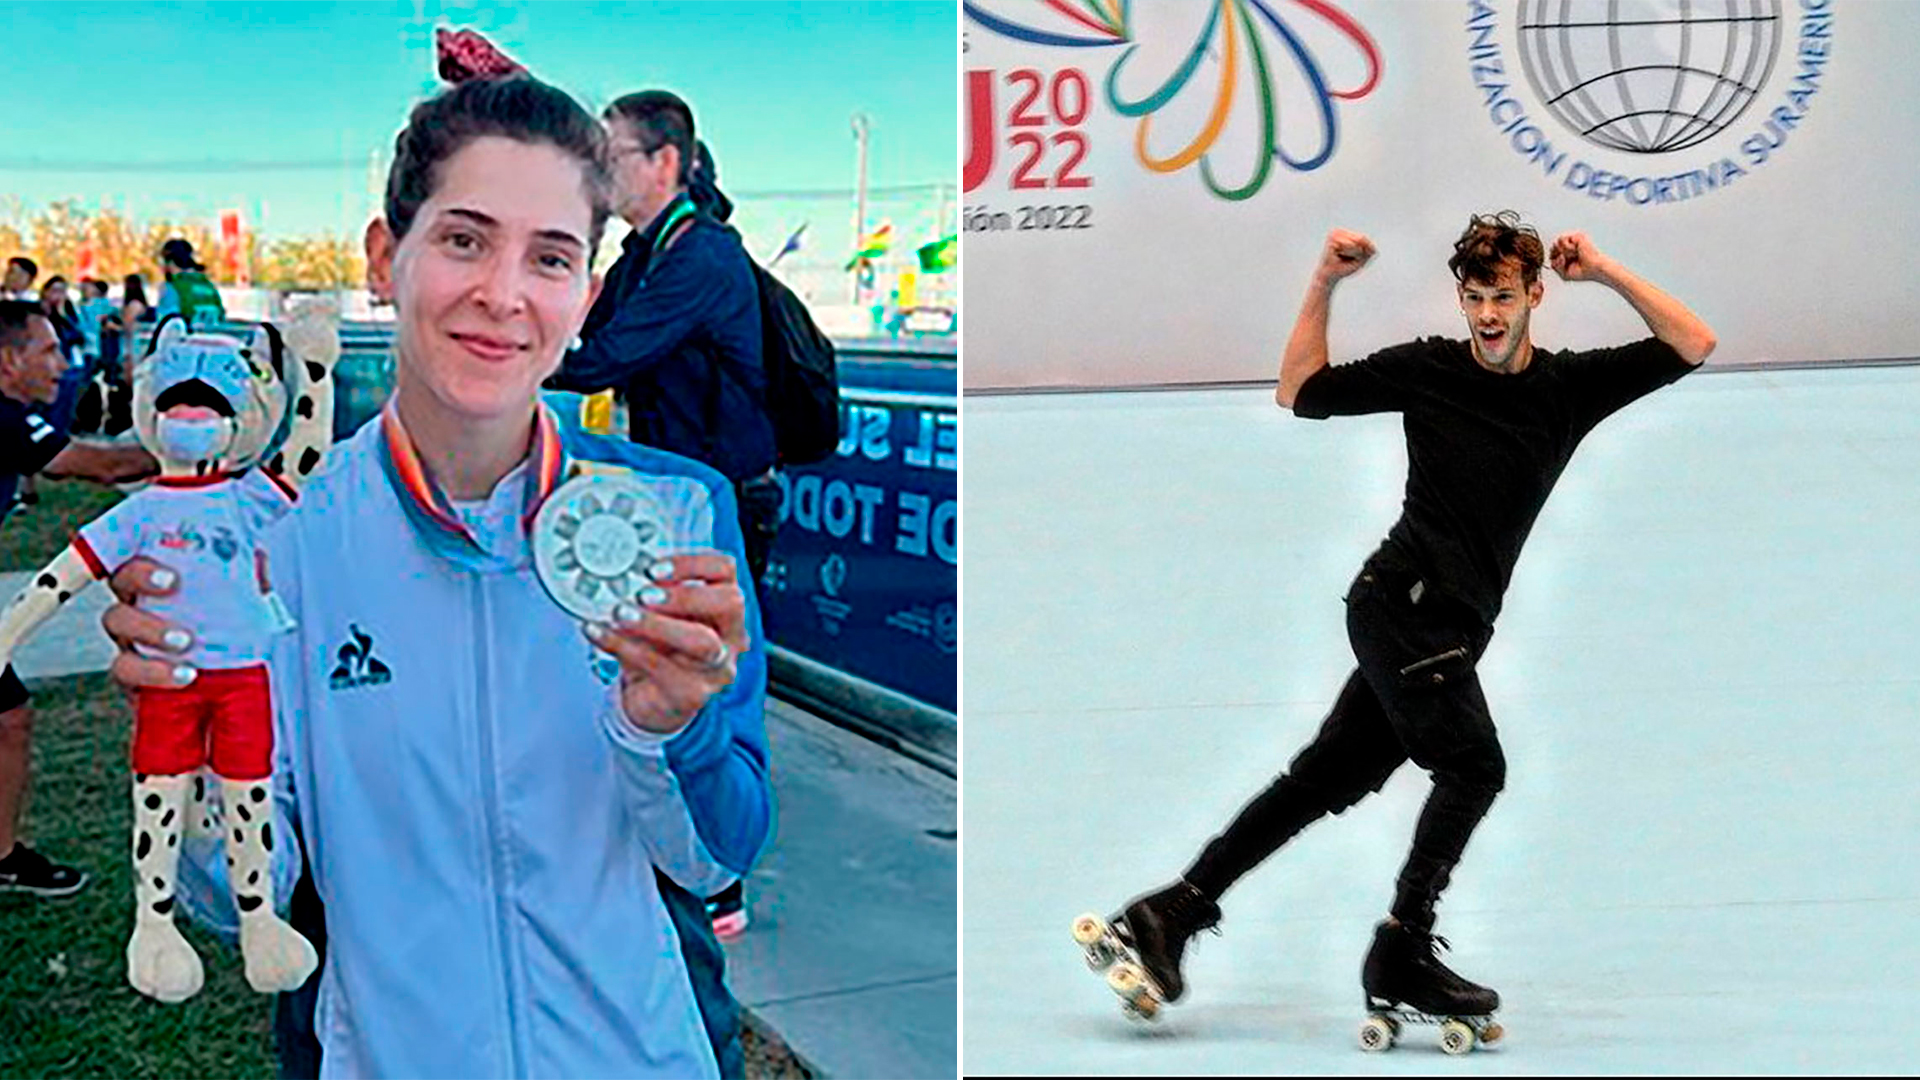 Plata: Rocío Berbel Alt en 10.000 metros puntos más eliminación del patinaje de velocidad. Bronce: Juan Francisco Sánchez en la prueba solo danza del patinaje artístico (@DeportesAR)